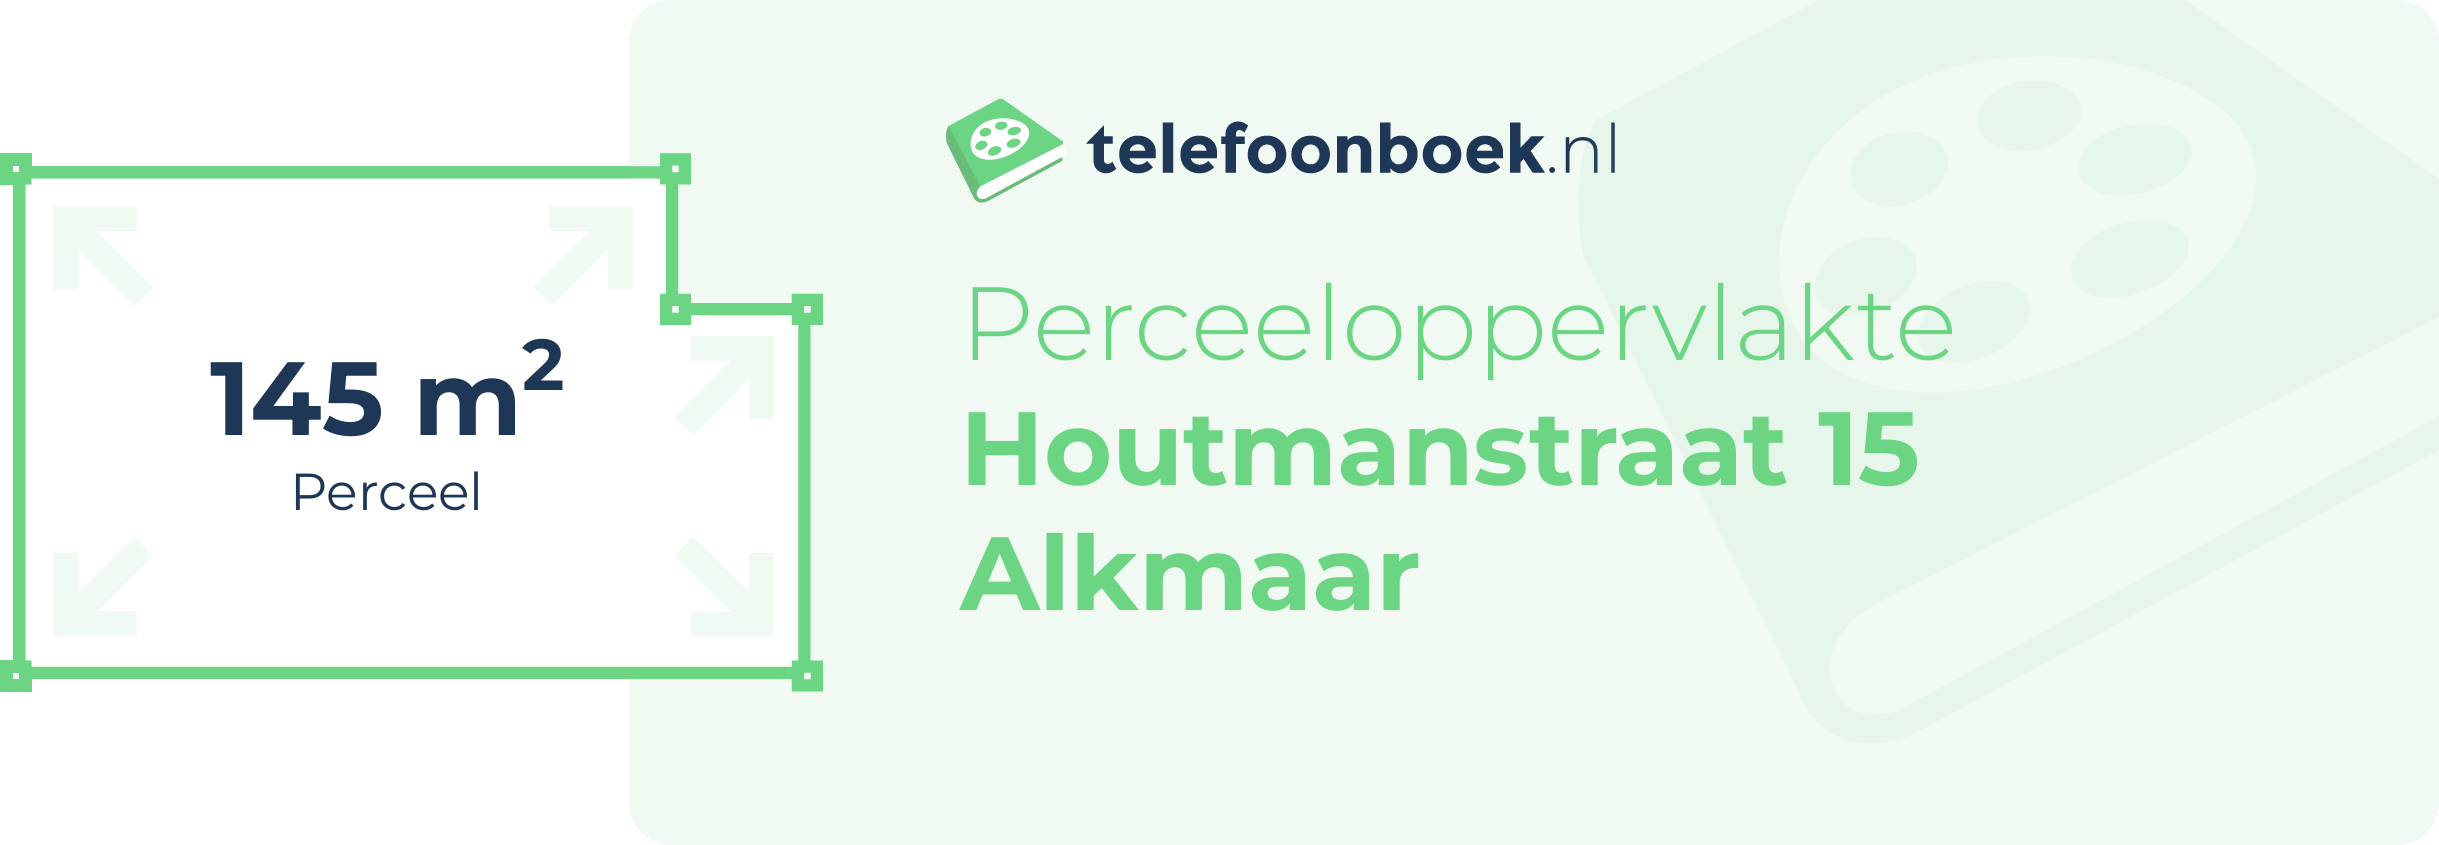 Perceeloppervlakte Houtmanstraat 15 Alkmaar